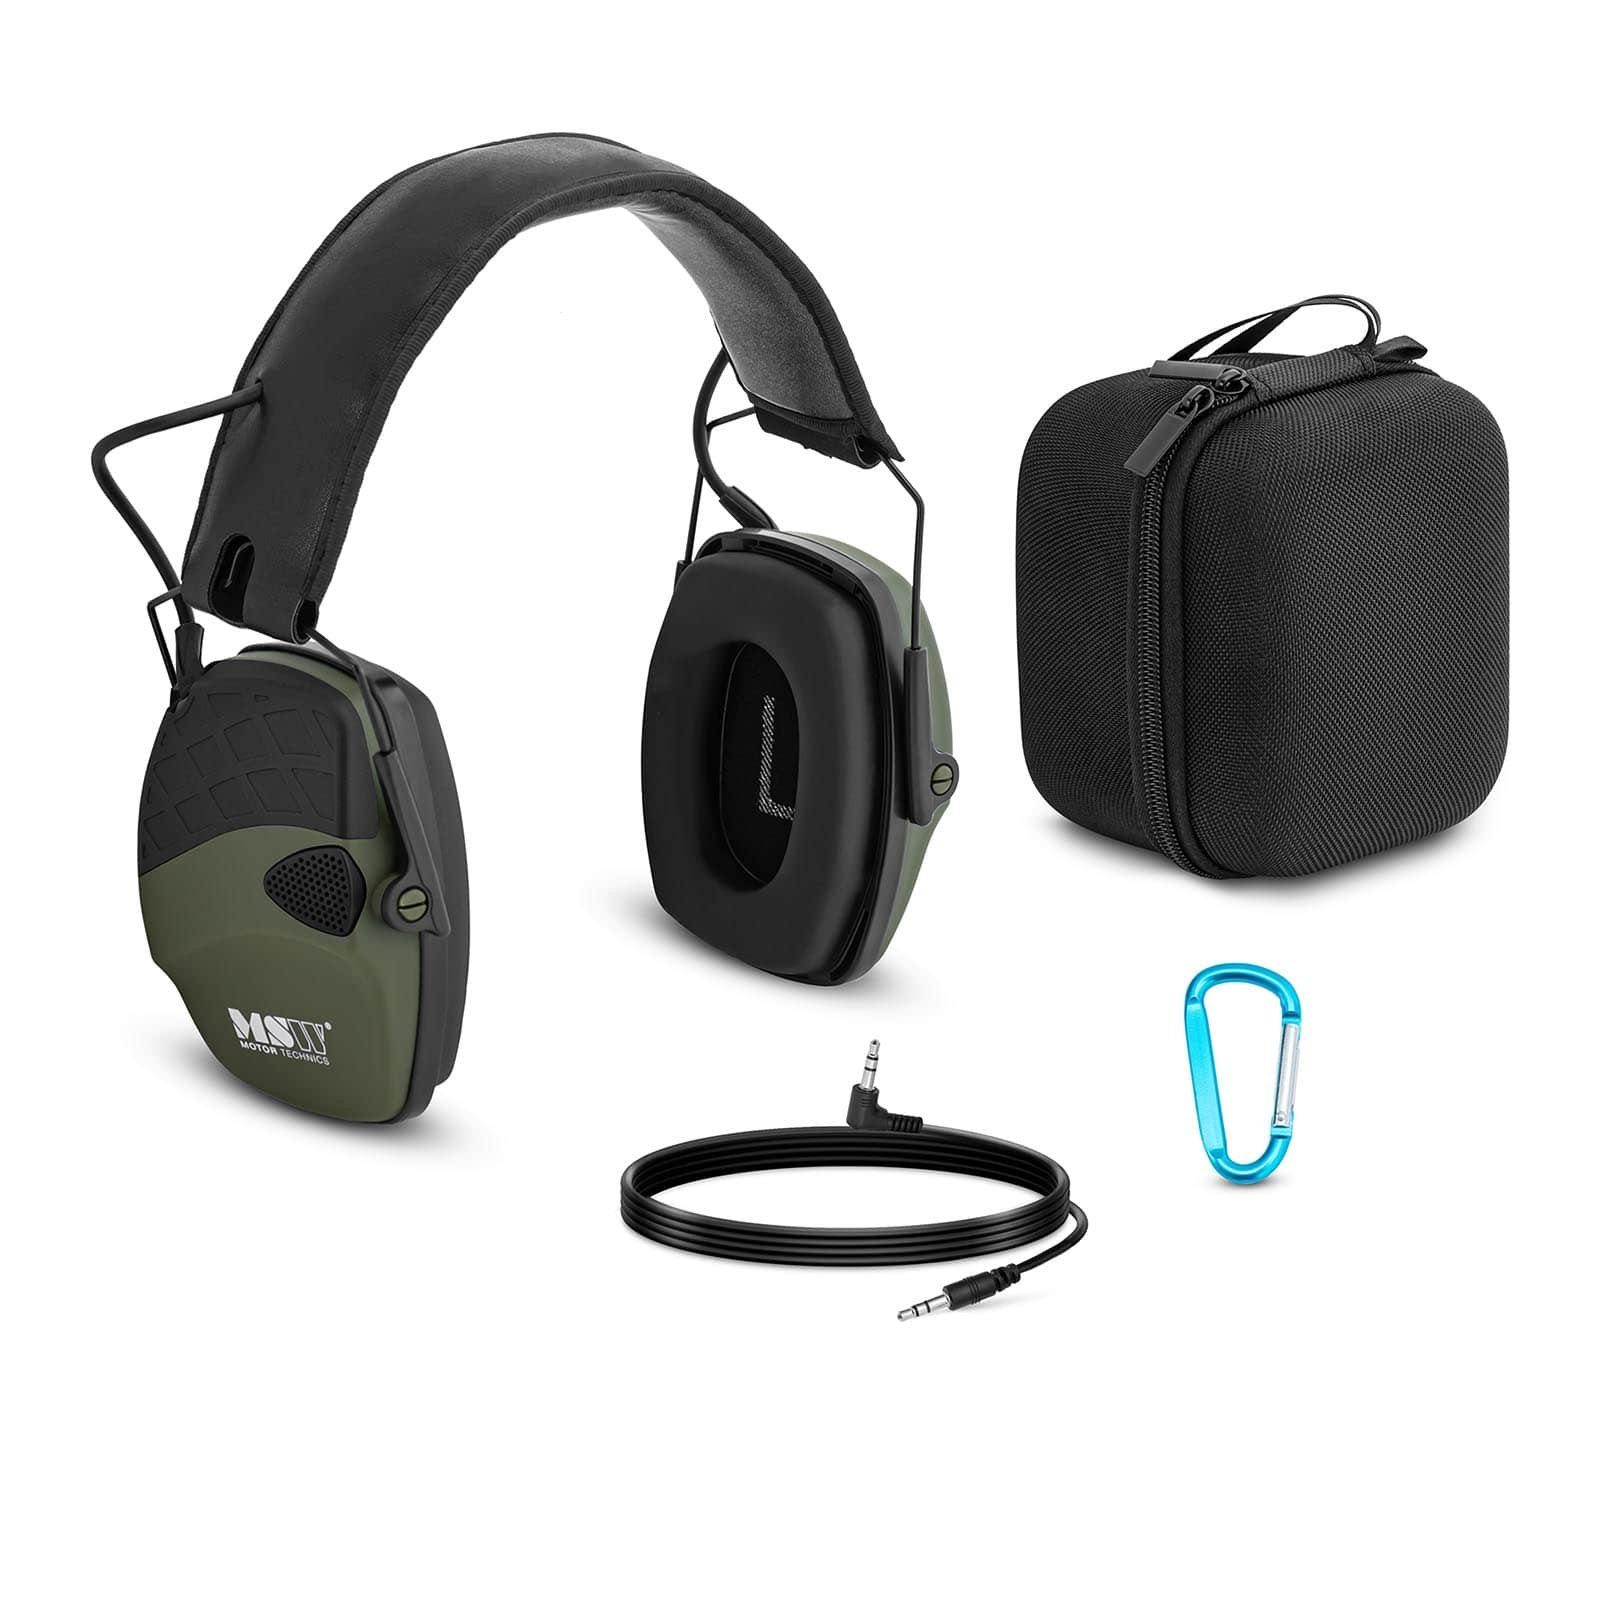 MSW Kapselgehörschutz Lärmschutzkopfhörer mit Außengeräuschregelung, Grün